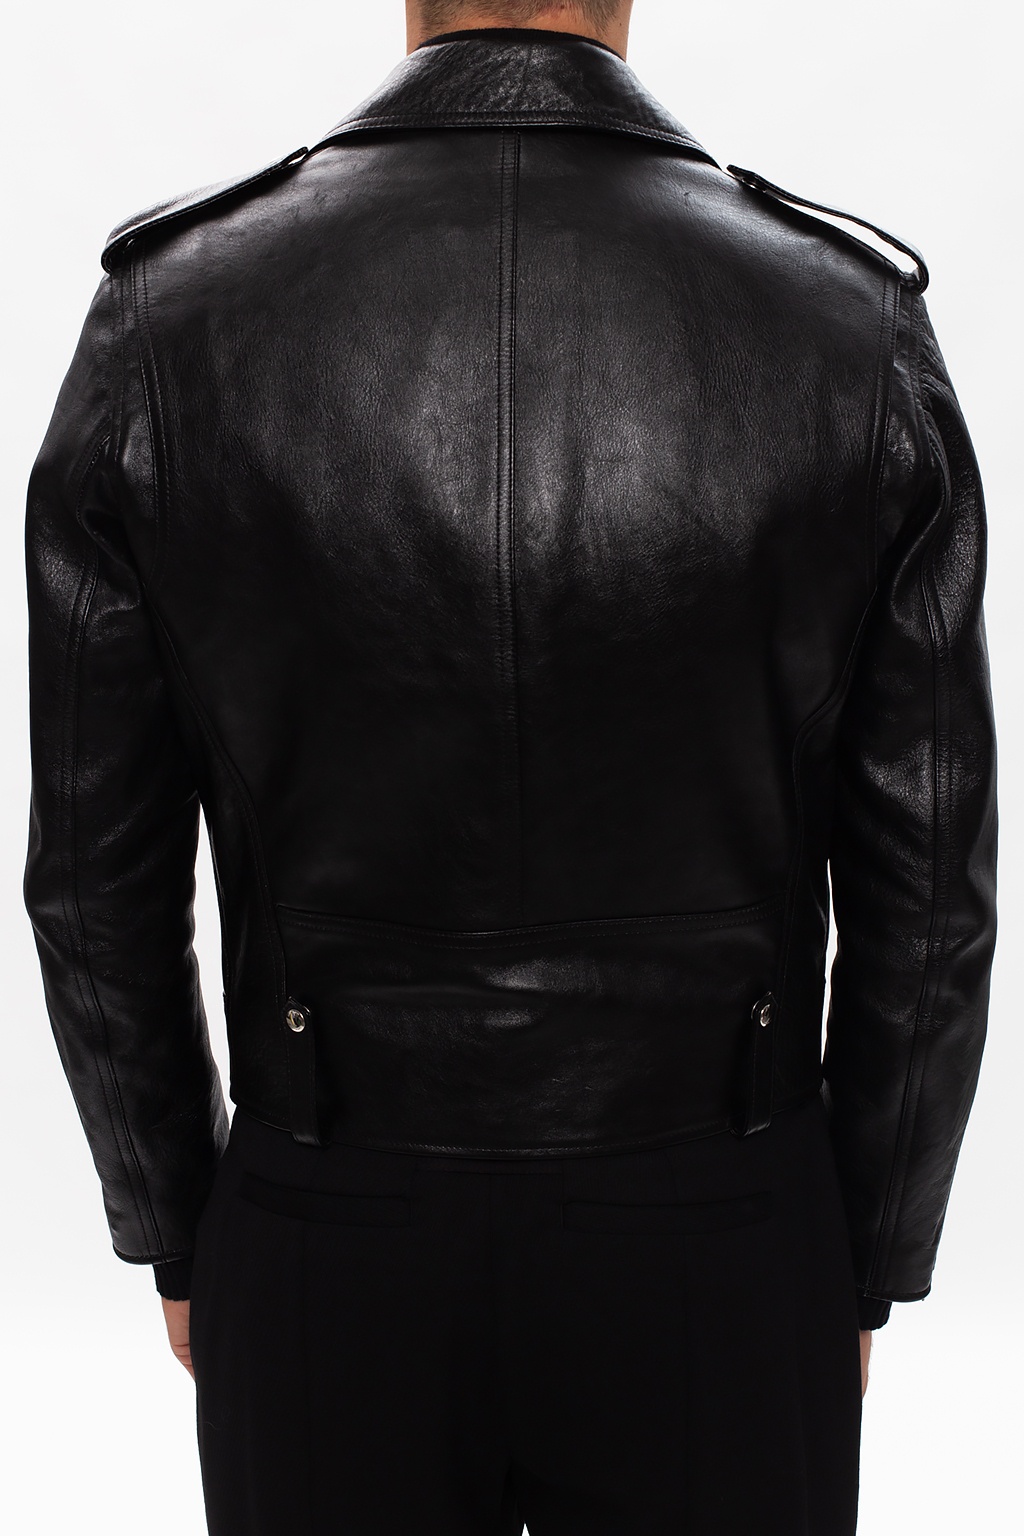 Givenchy irresistible jacket